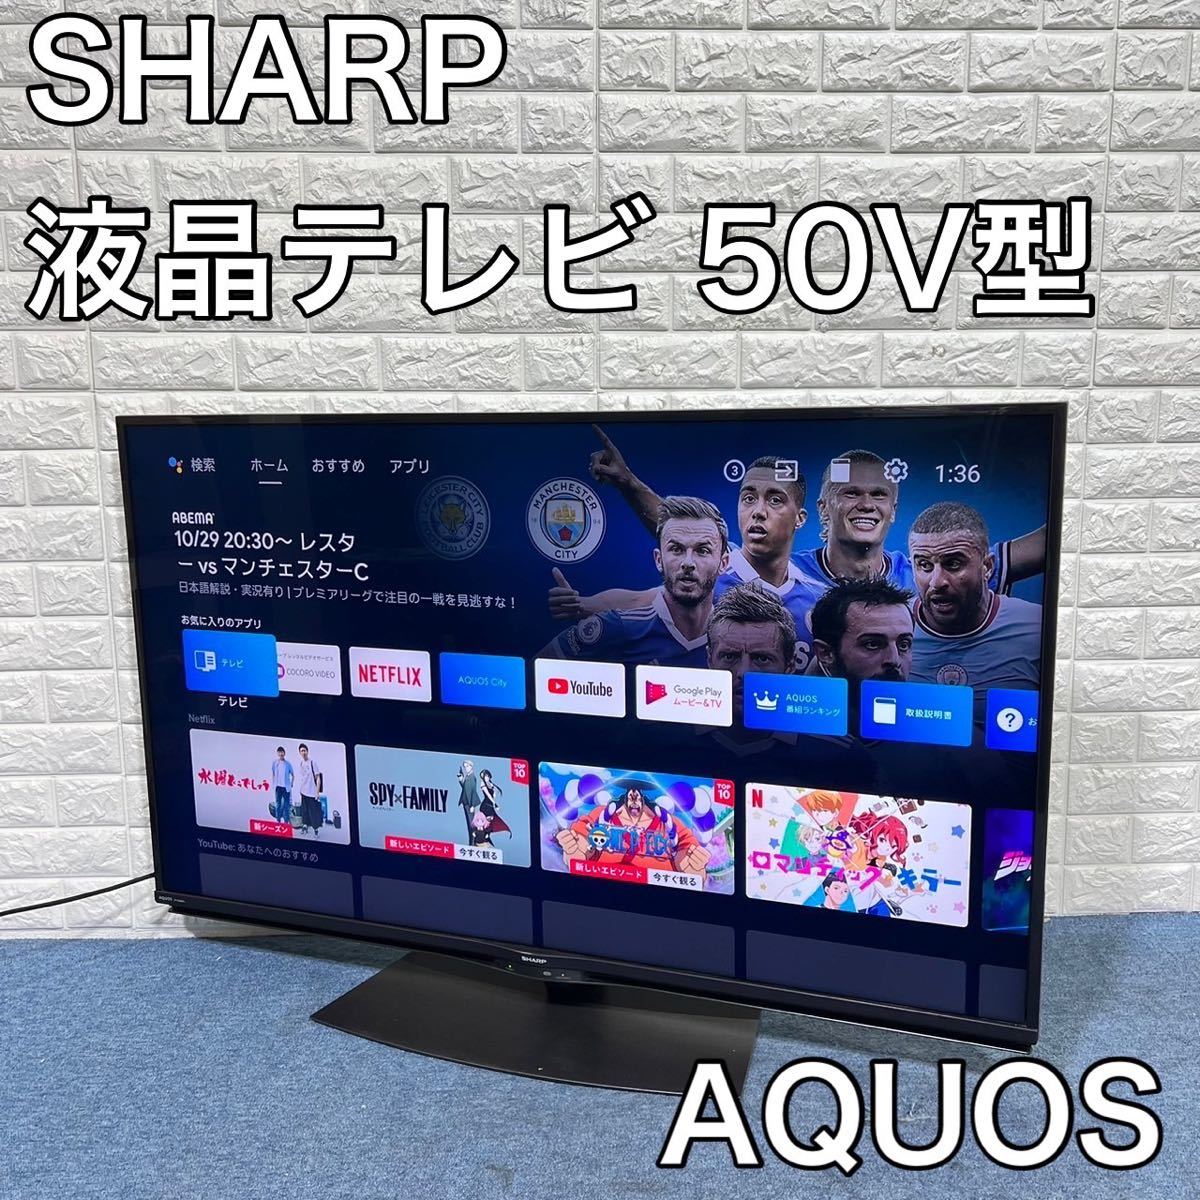 シャープAQUOS 4KテレビSHARP 4T-C50BN1-